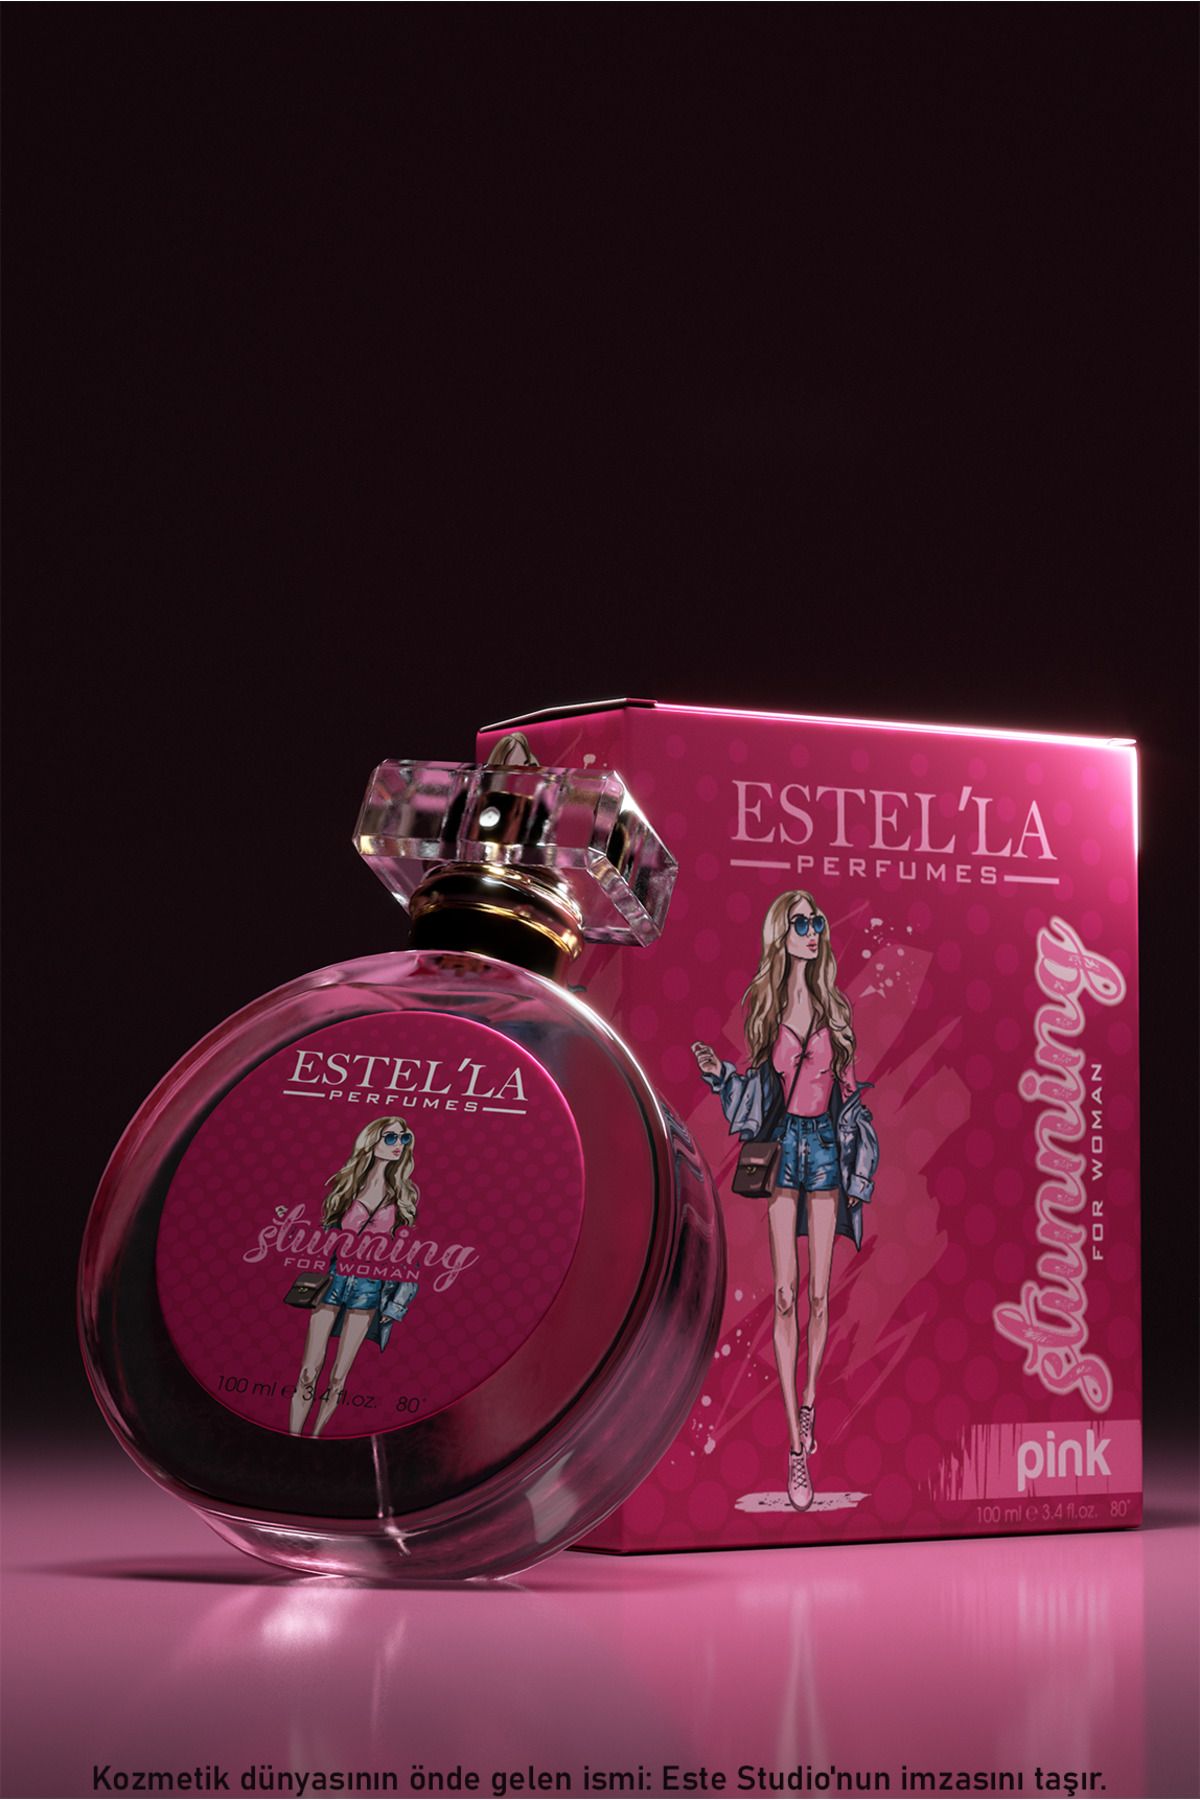 Estella Güçlü ve Zarif Kızlara Özel: 100 ml Stunning Pink Kadın Parfümü!